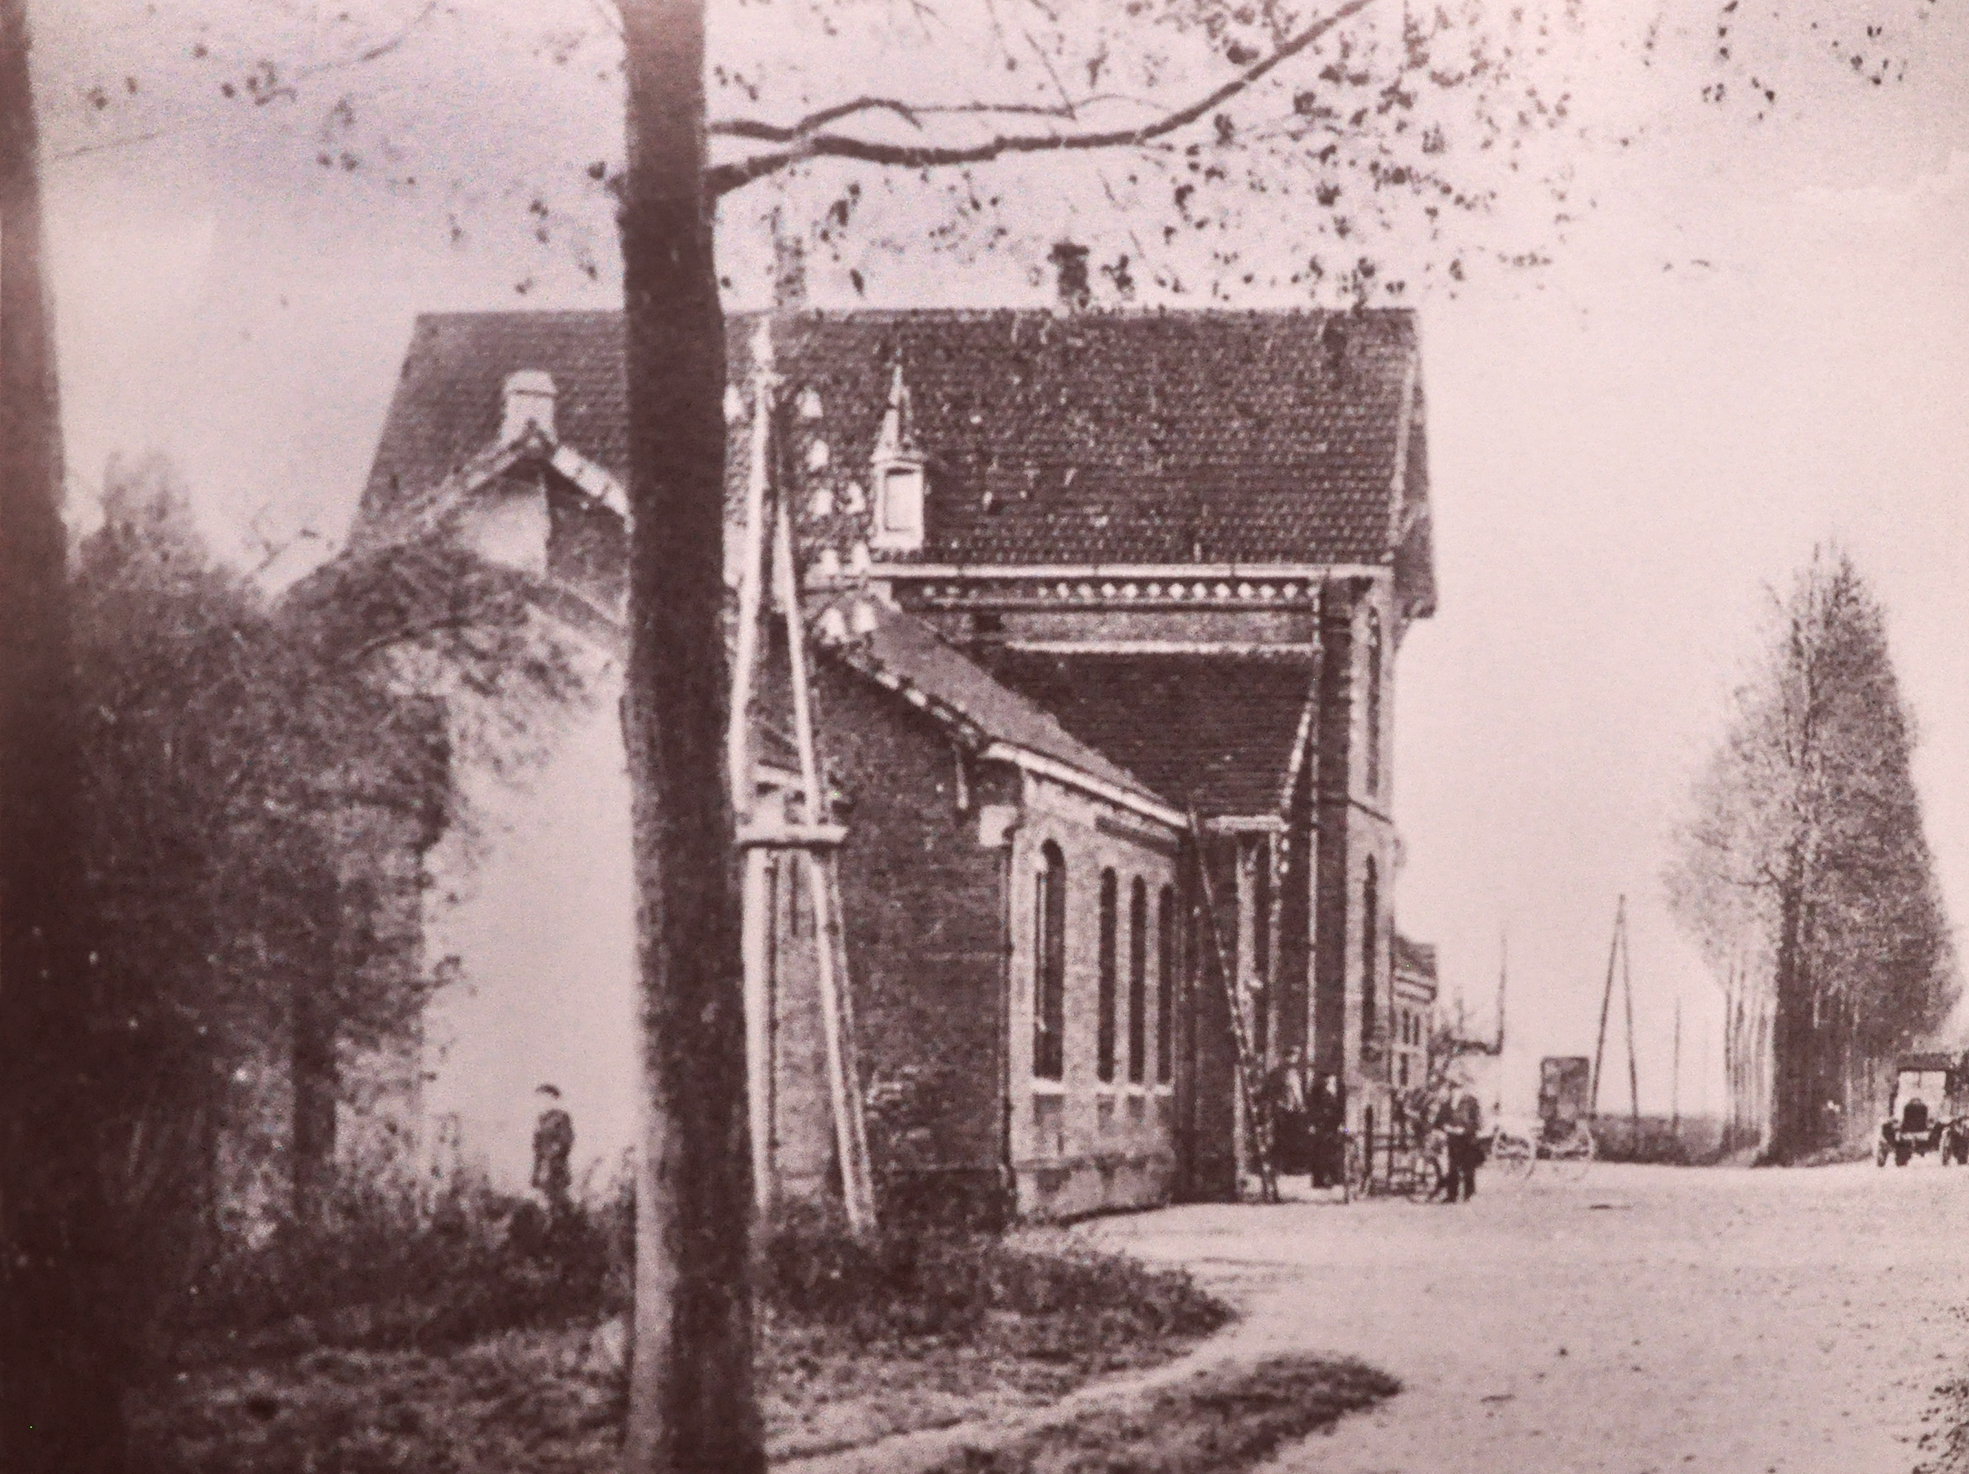 Het treinstation van Boxmeer zoals het er begin vorige eeuw uitzag. Foto uit: Oud Boxmeer in Beeld